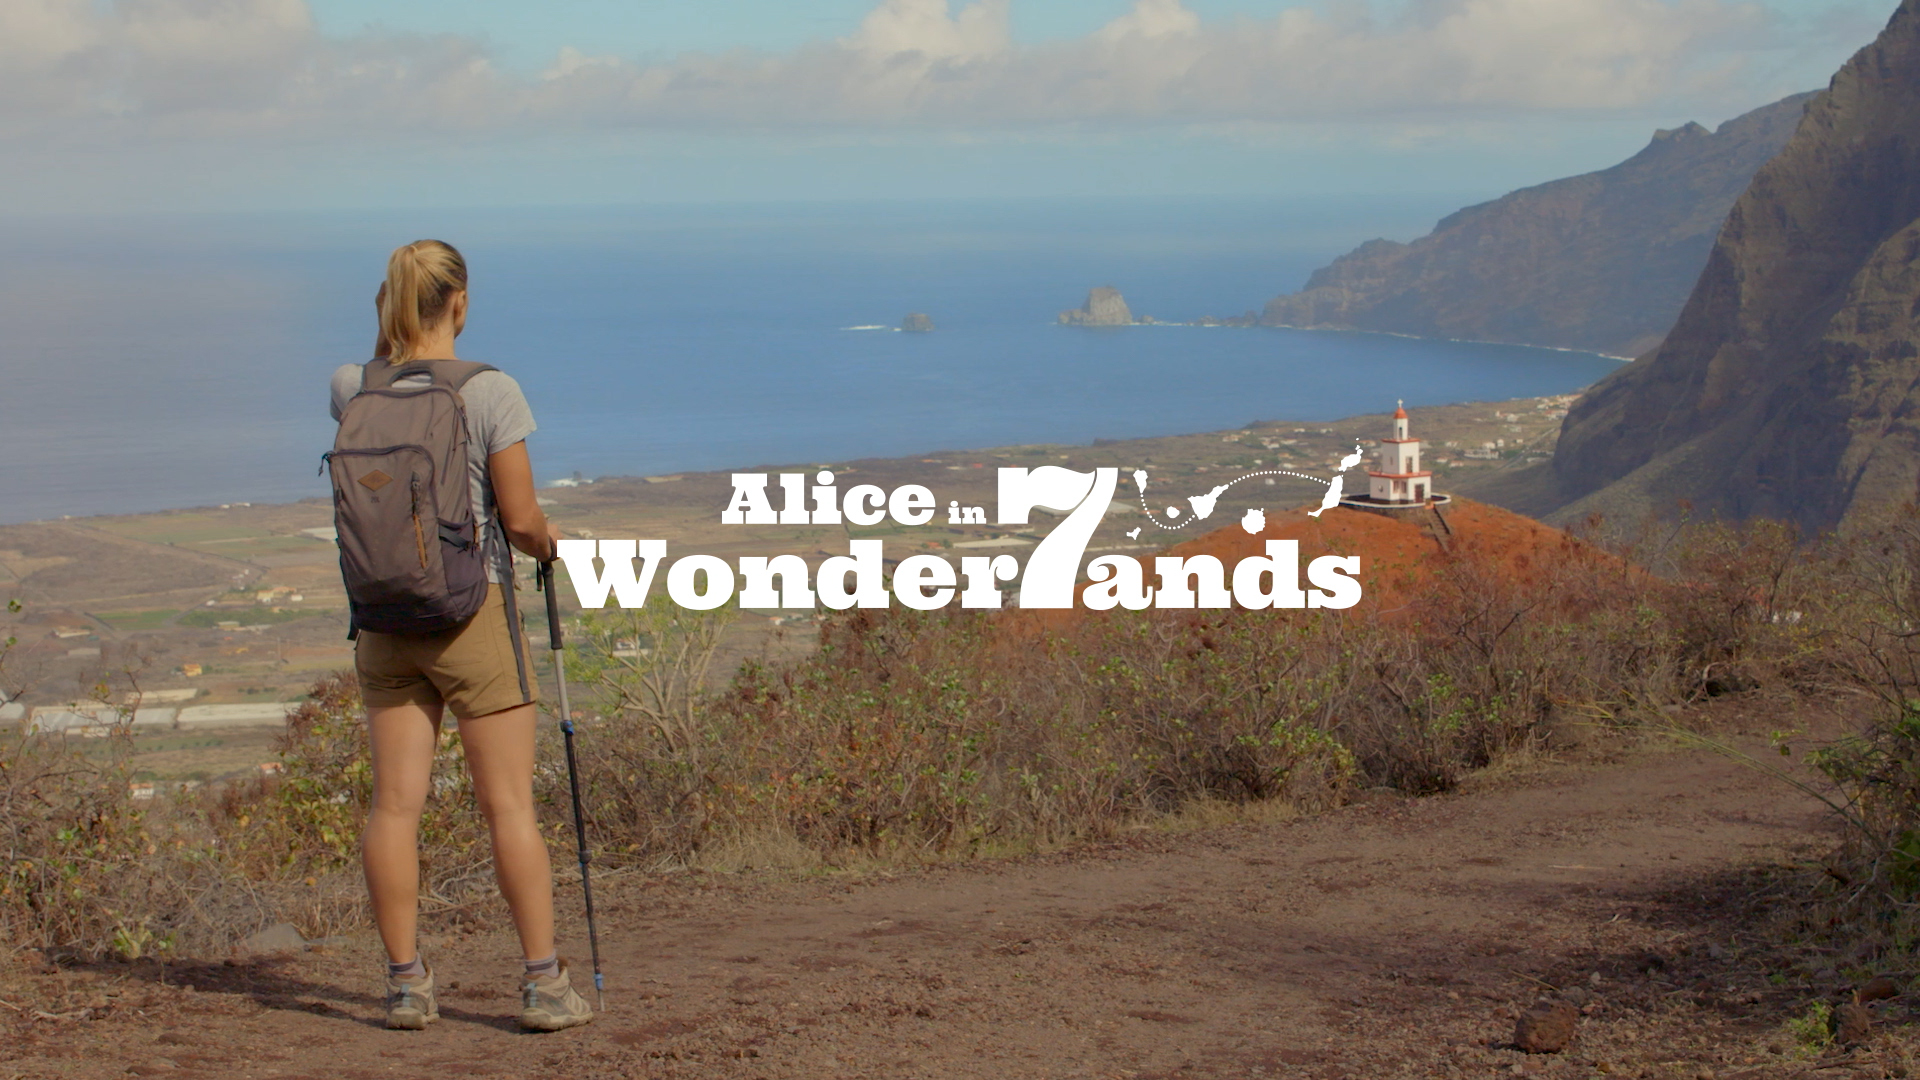 Alice in 7 wonderlands - El Hierro